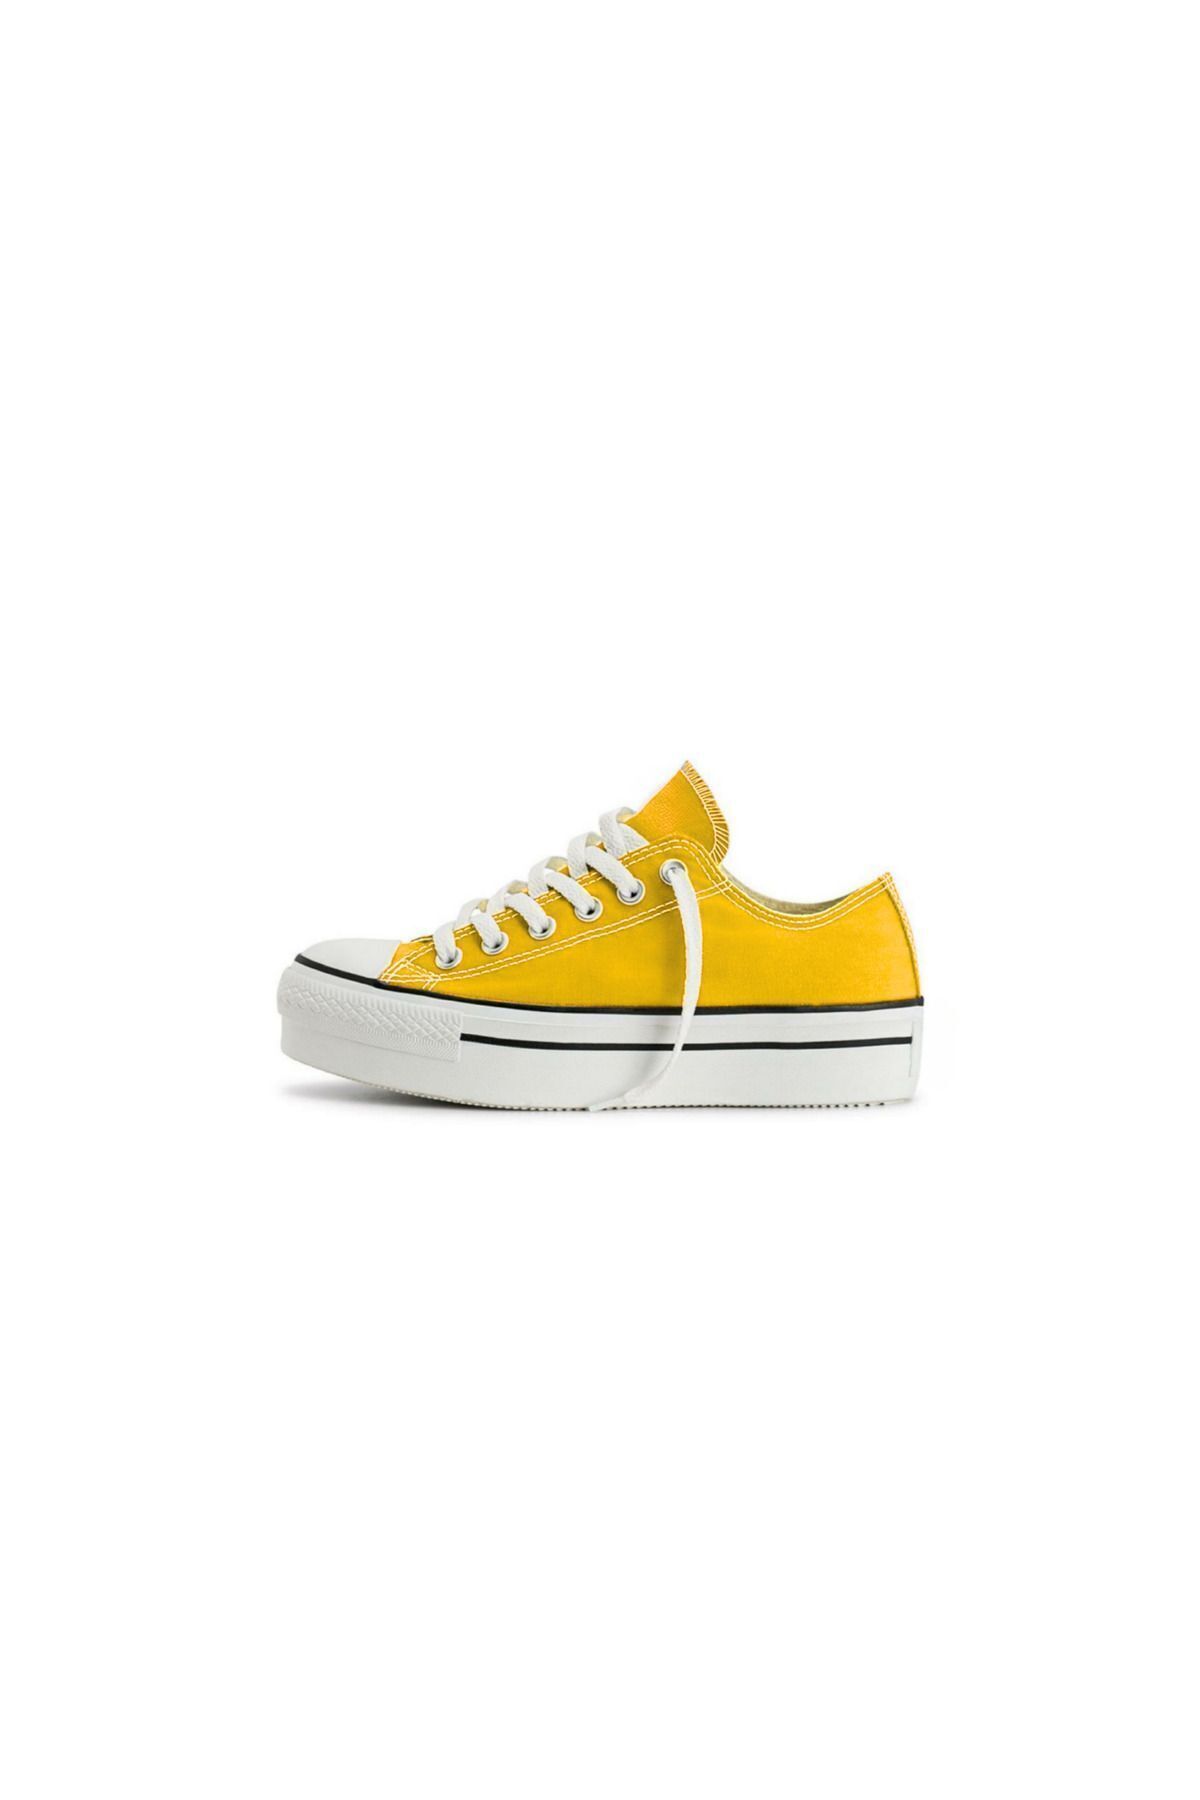 GOSSİP TEAM Kalın Taban All Star Sarı Platform Sneaker Spor Ayakkabı